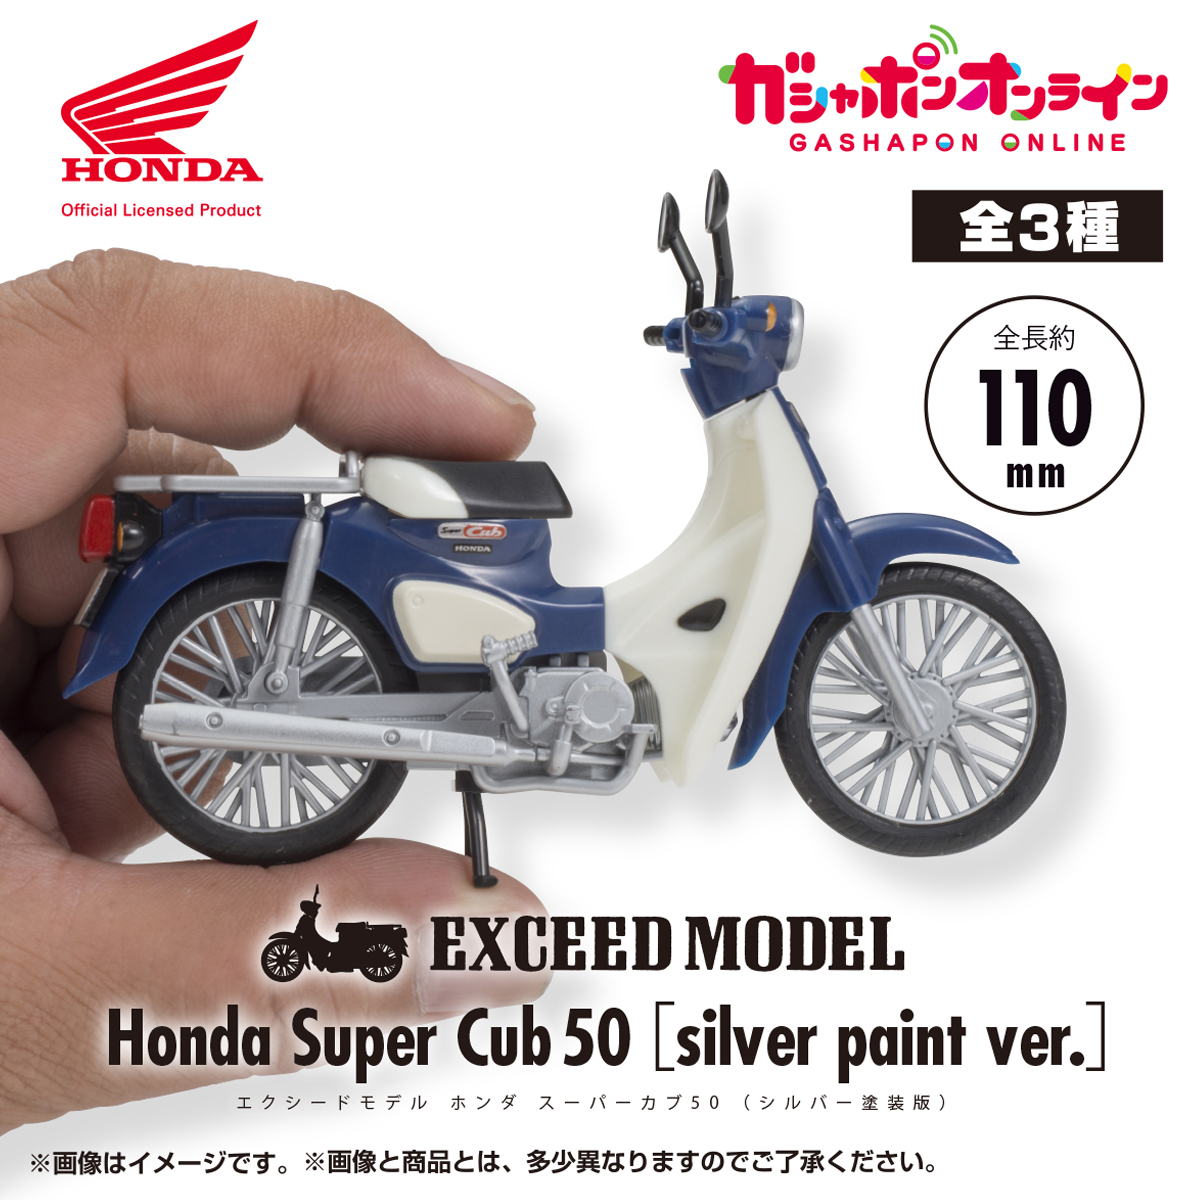 EXCEED MODEL Honda スーパーカブ50 シルバー塗装版